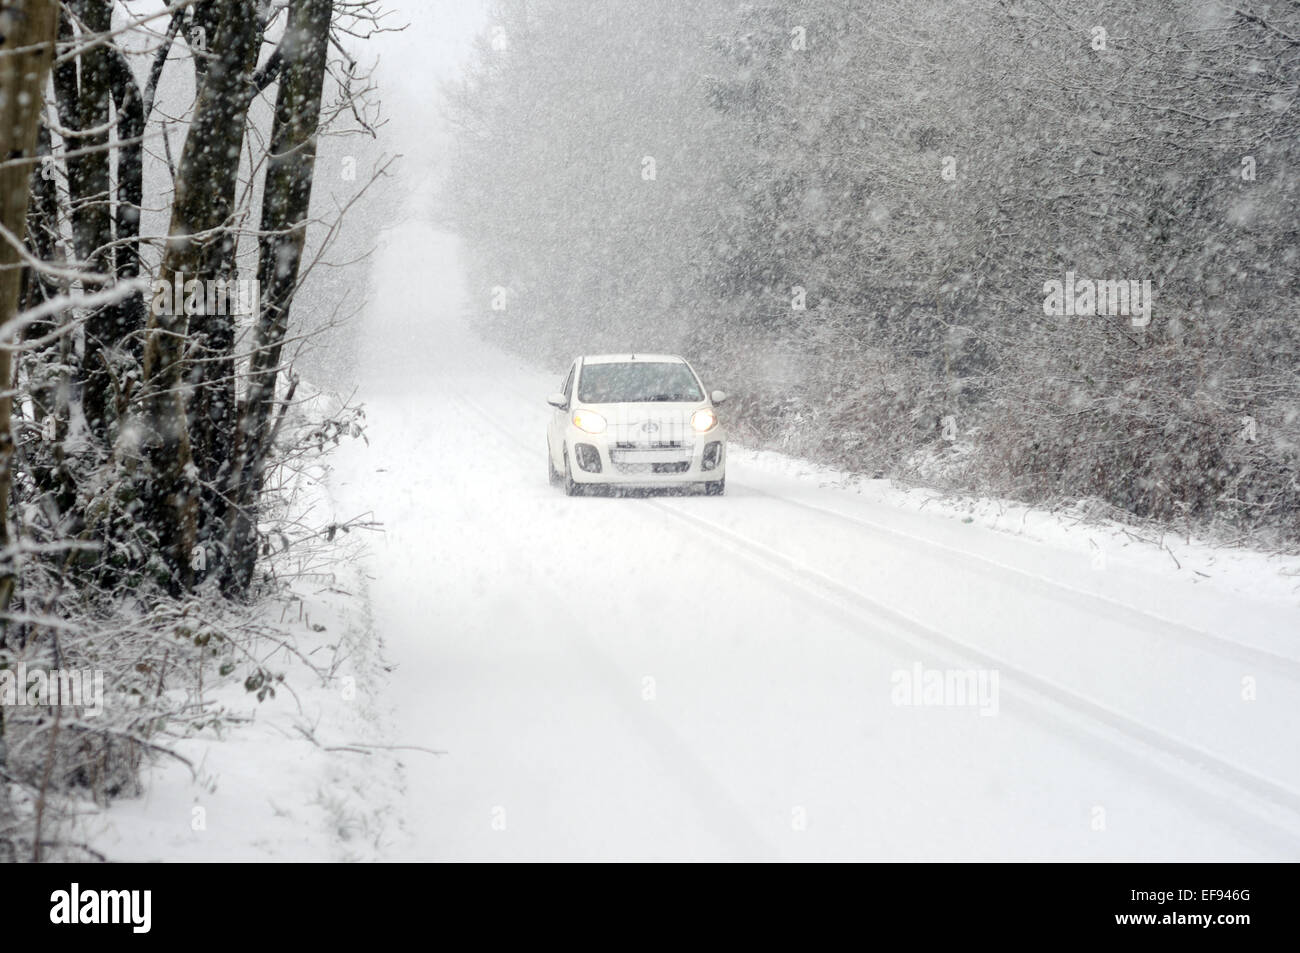 North East Derbyshire, Royaume-Uni. 29 janvier, 2015. Météo France : le poids de la neige et le blizzard ont balayé le Derbyshire, provoquant le chaos voyage ,dans l'heure des routes bloquées et des véhicules abandonnés le long de la route .plus de neige est prévue plus tard aujourd'hui . Credit : IFIMAGE/Alamy Live News Banque D'Images